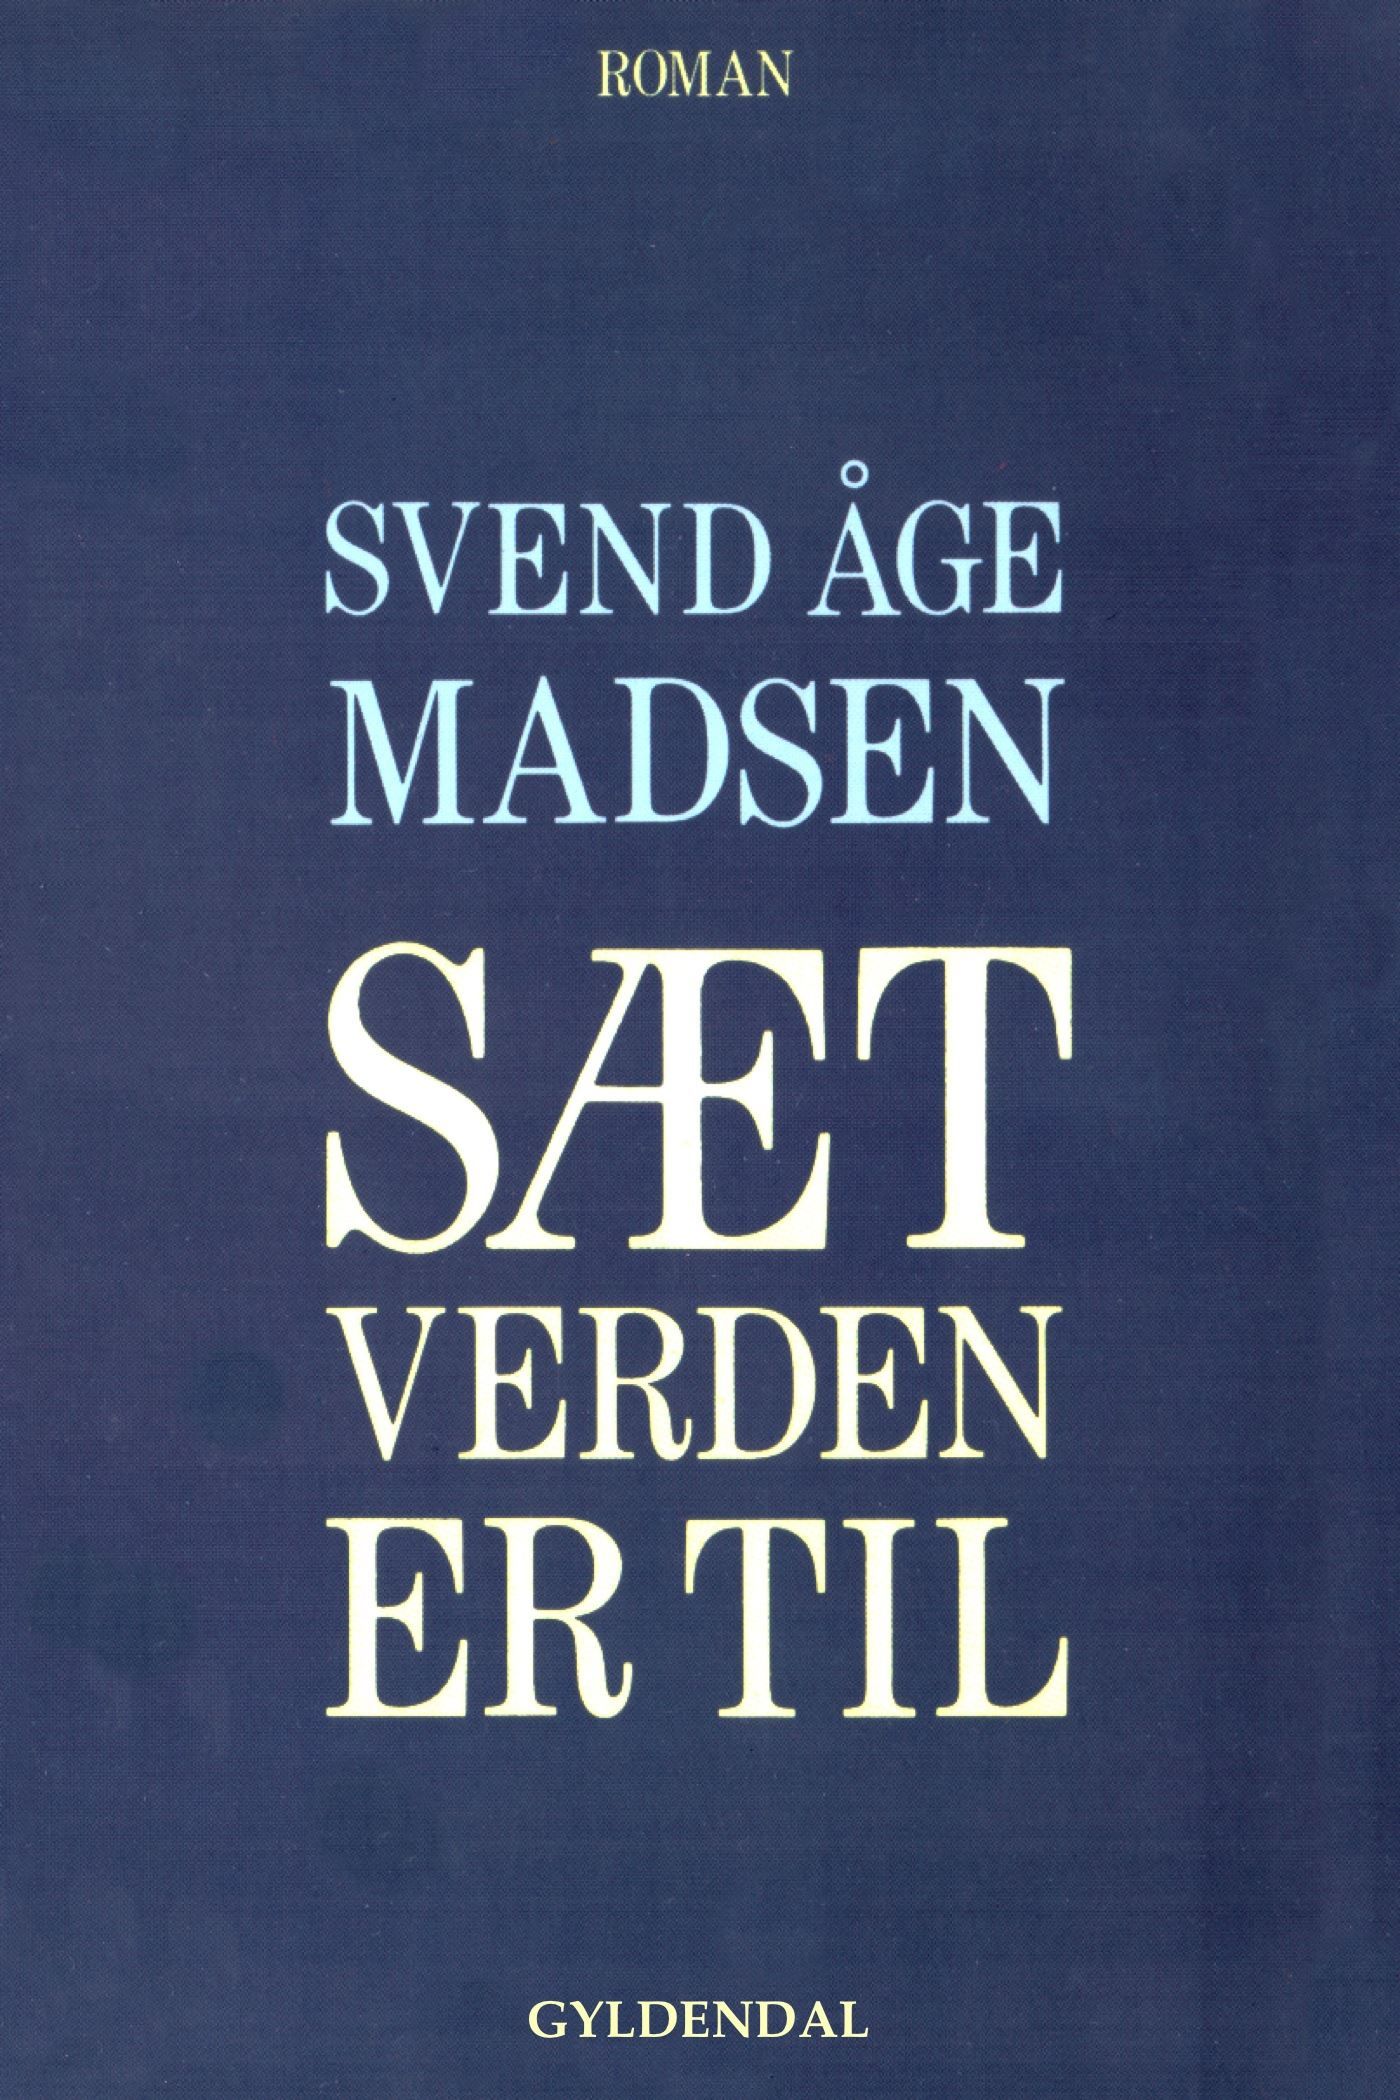 Sæt verden er til, ljudbok av Svend Åge Madsen